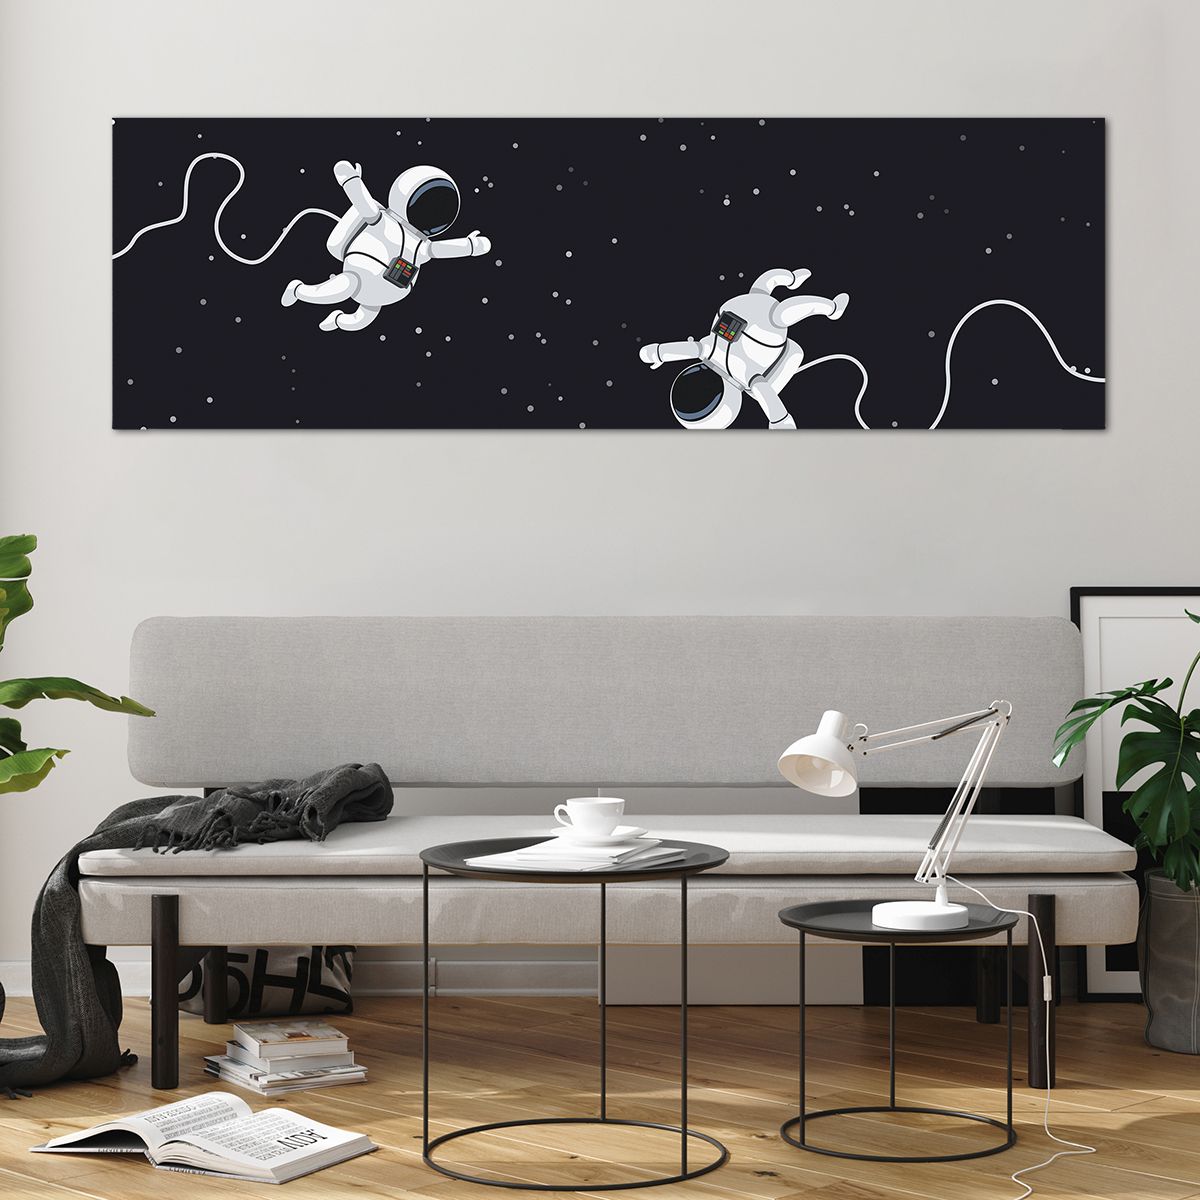 Bild på glas Abstraktion, Bild på glas Astronaut, Bild på glas Kosmos, Bild på glas Svartvitt, Bild på glas För Barn